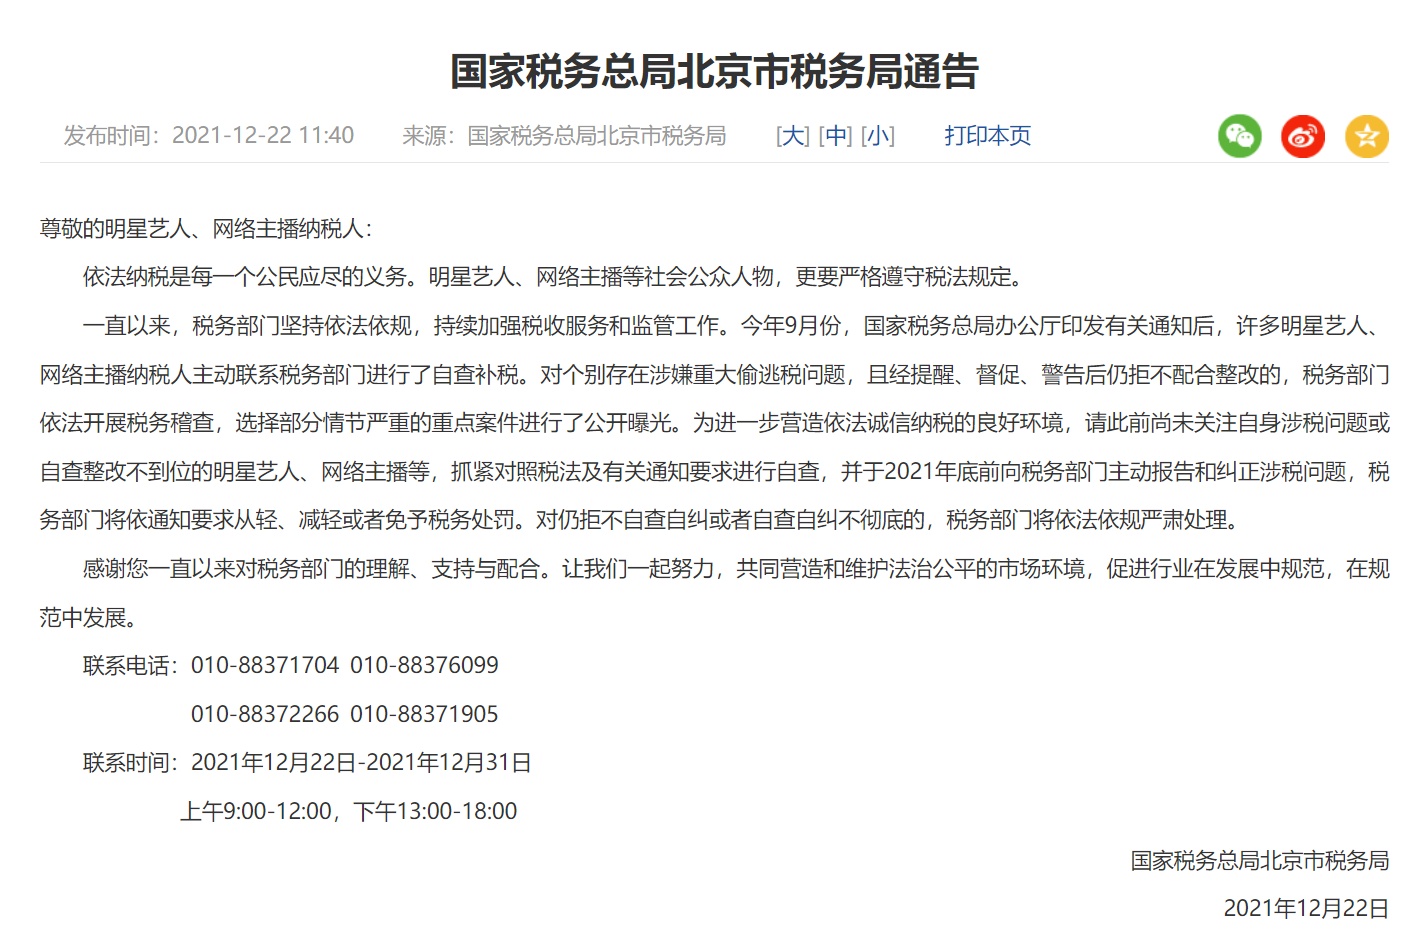 北京、江苏等多地要求艺人主播年底前纠正涉税问题